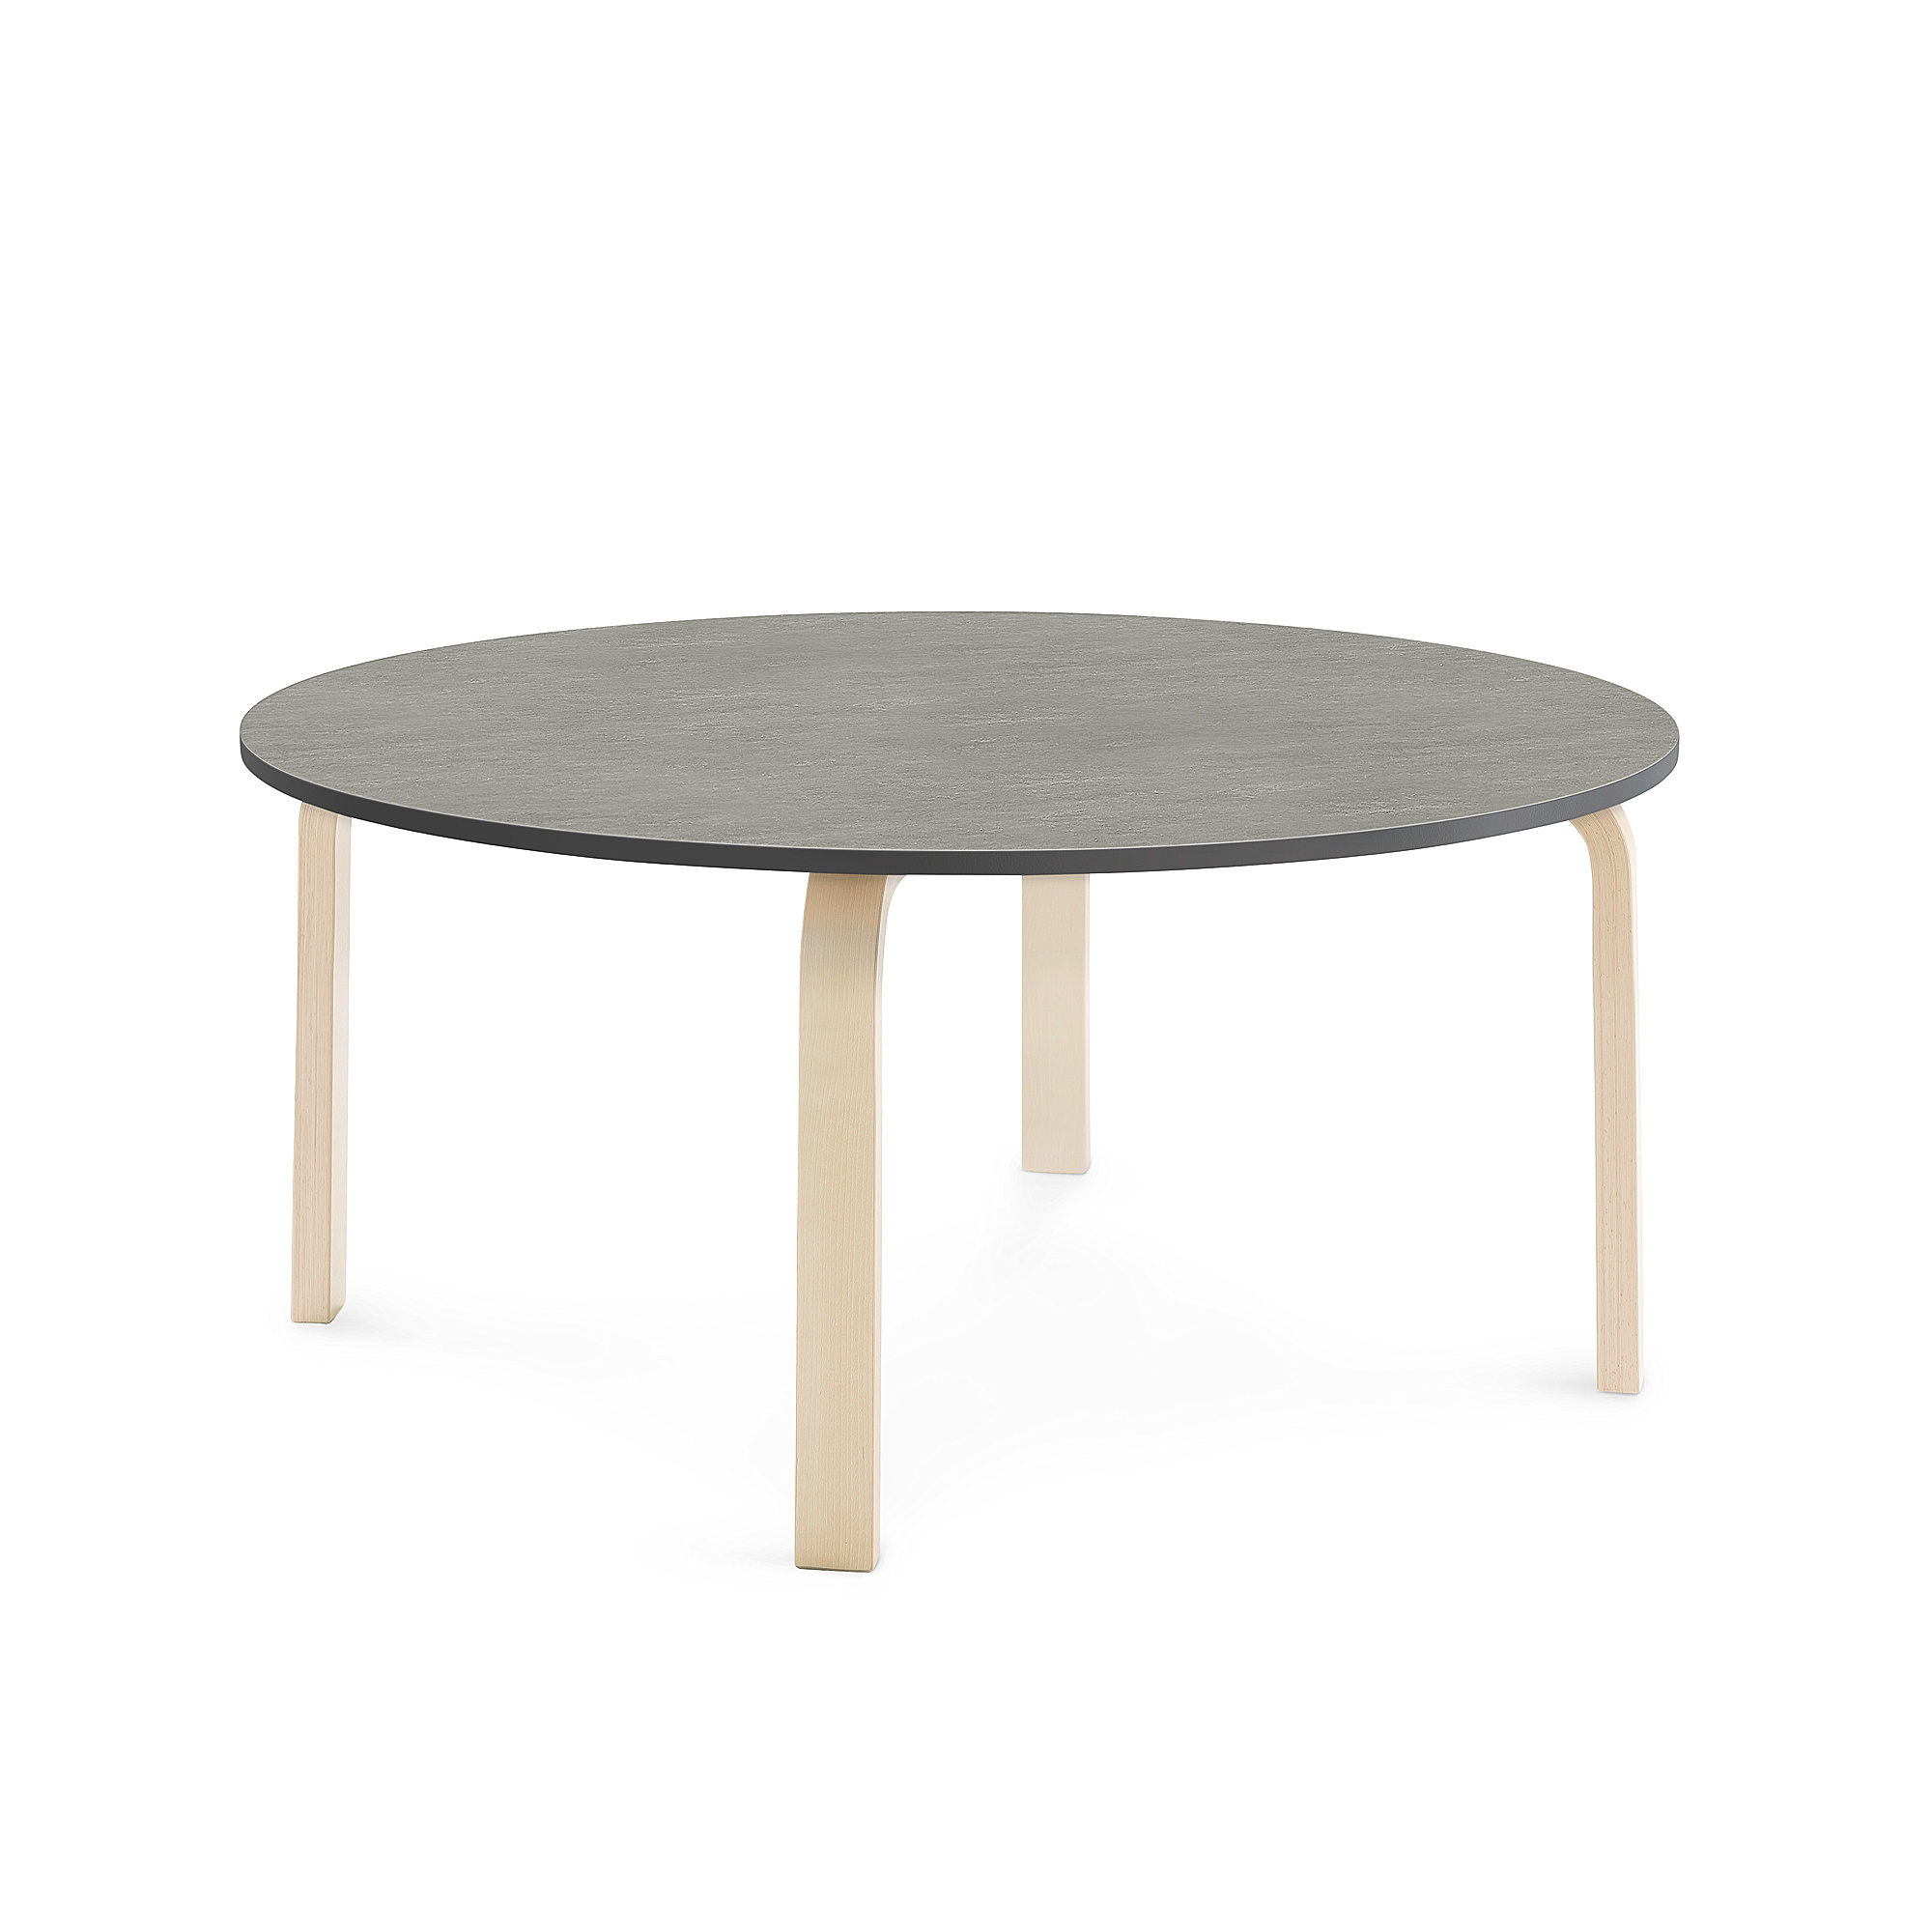 Stůl ELTON, Ø 1200x530 mm, bříza, akustické linoleum, tmavě šedá